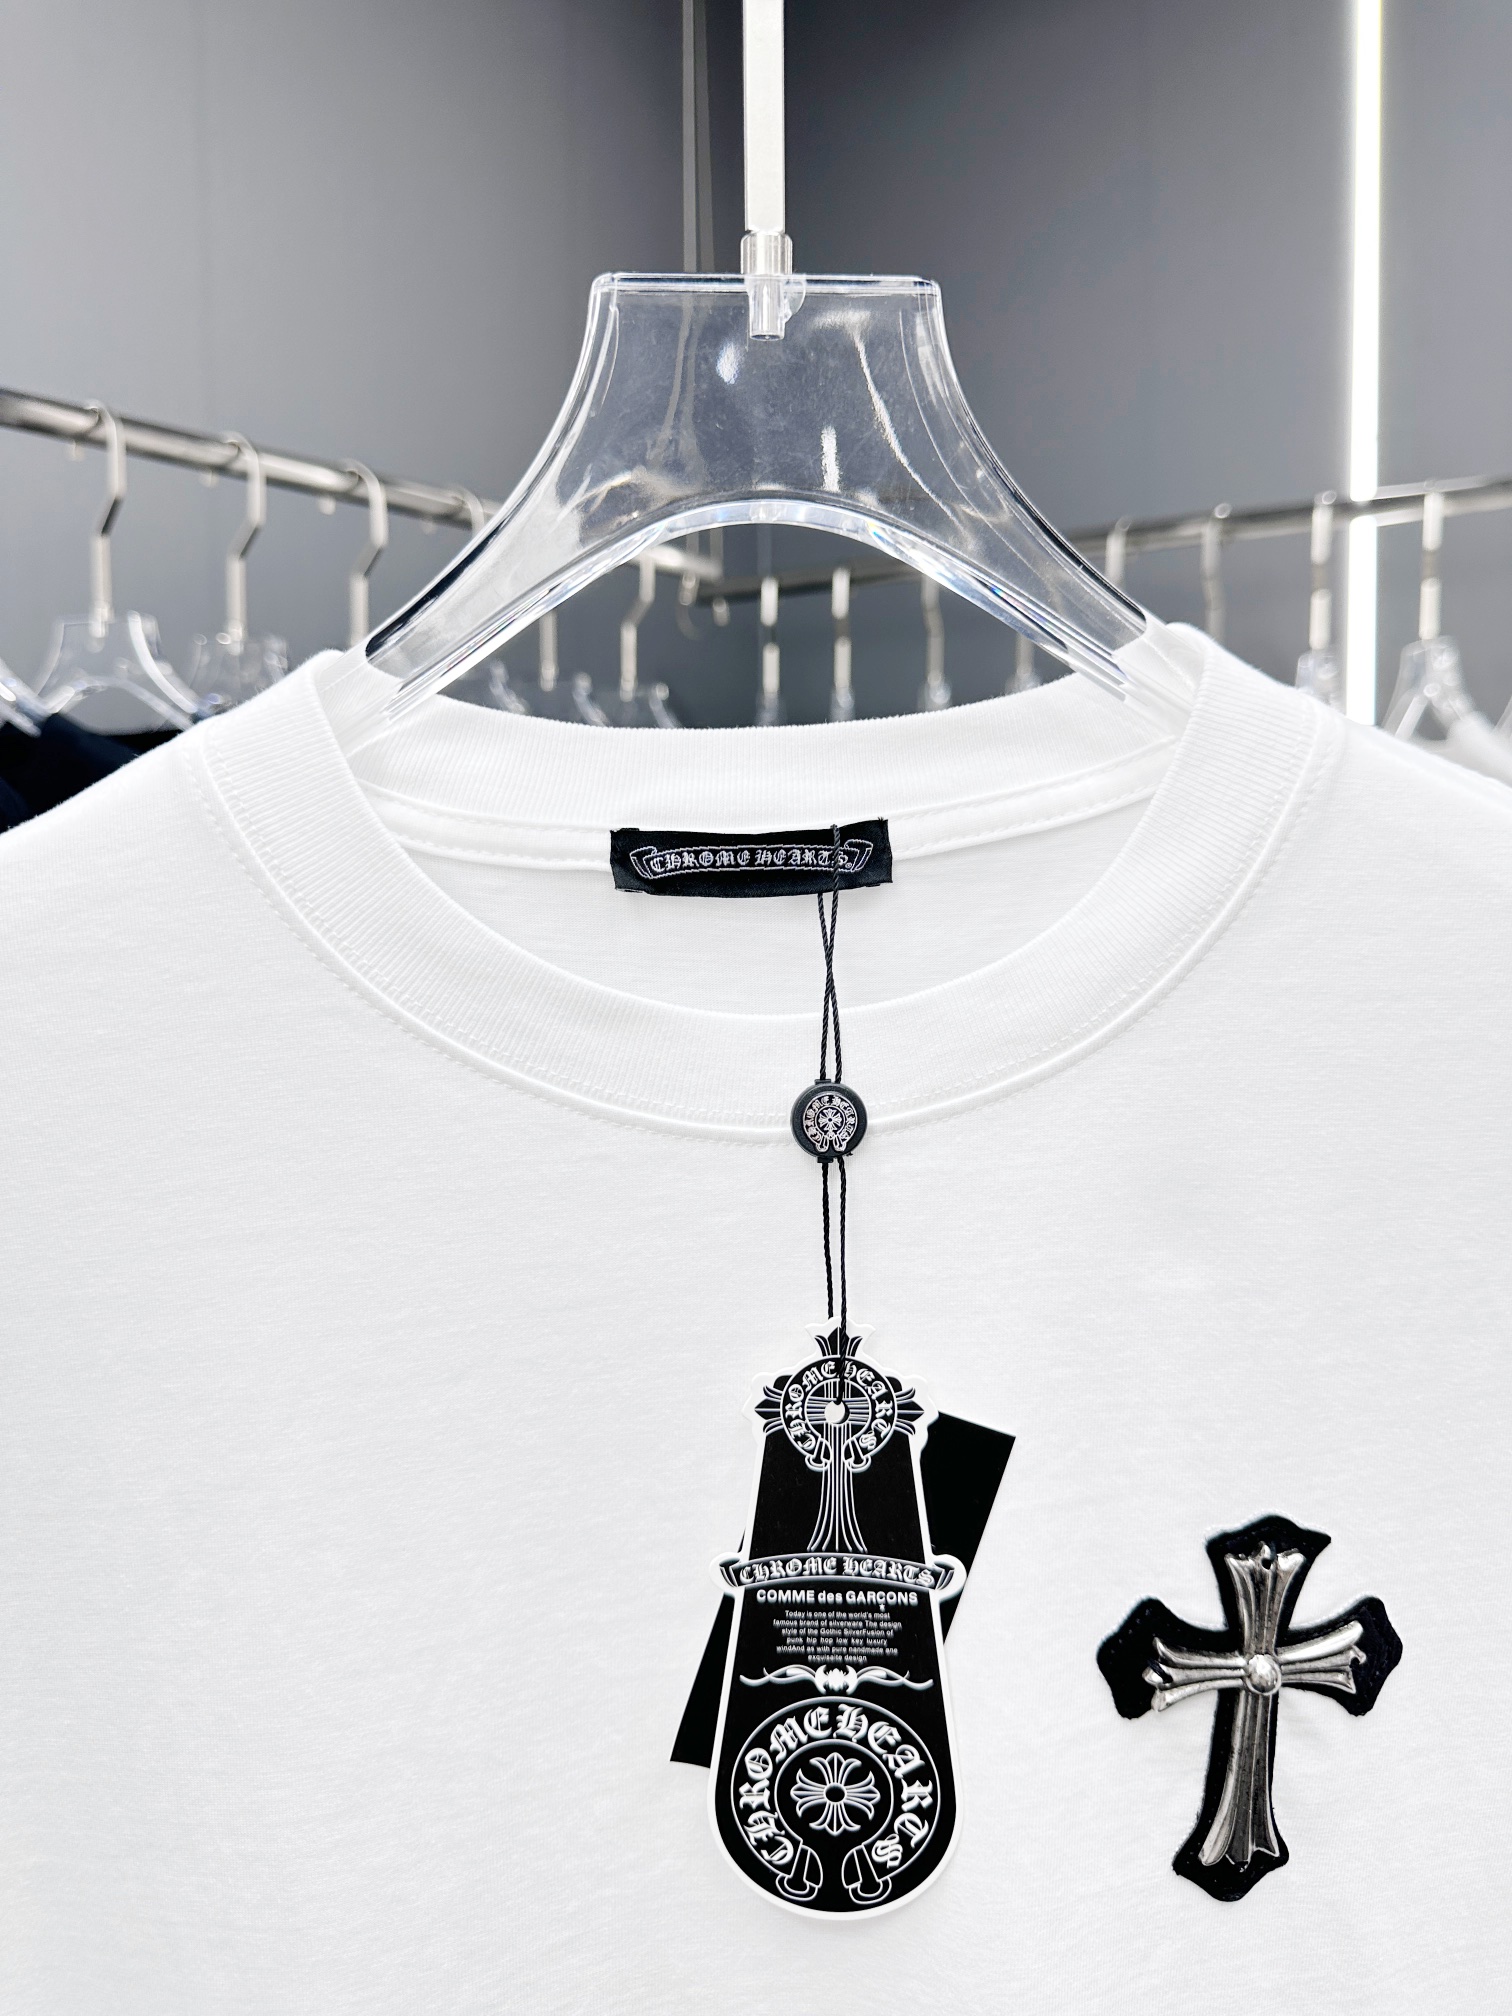 HOT100%新品 クロムハーツtシャツ 激安通販 ゆったりトップス 優れた綿 人気商品 シンプル ホワイト_3